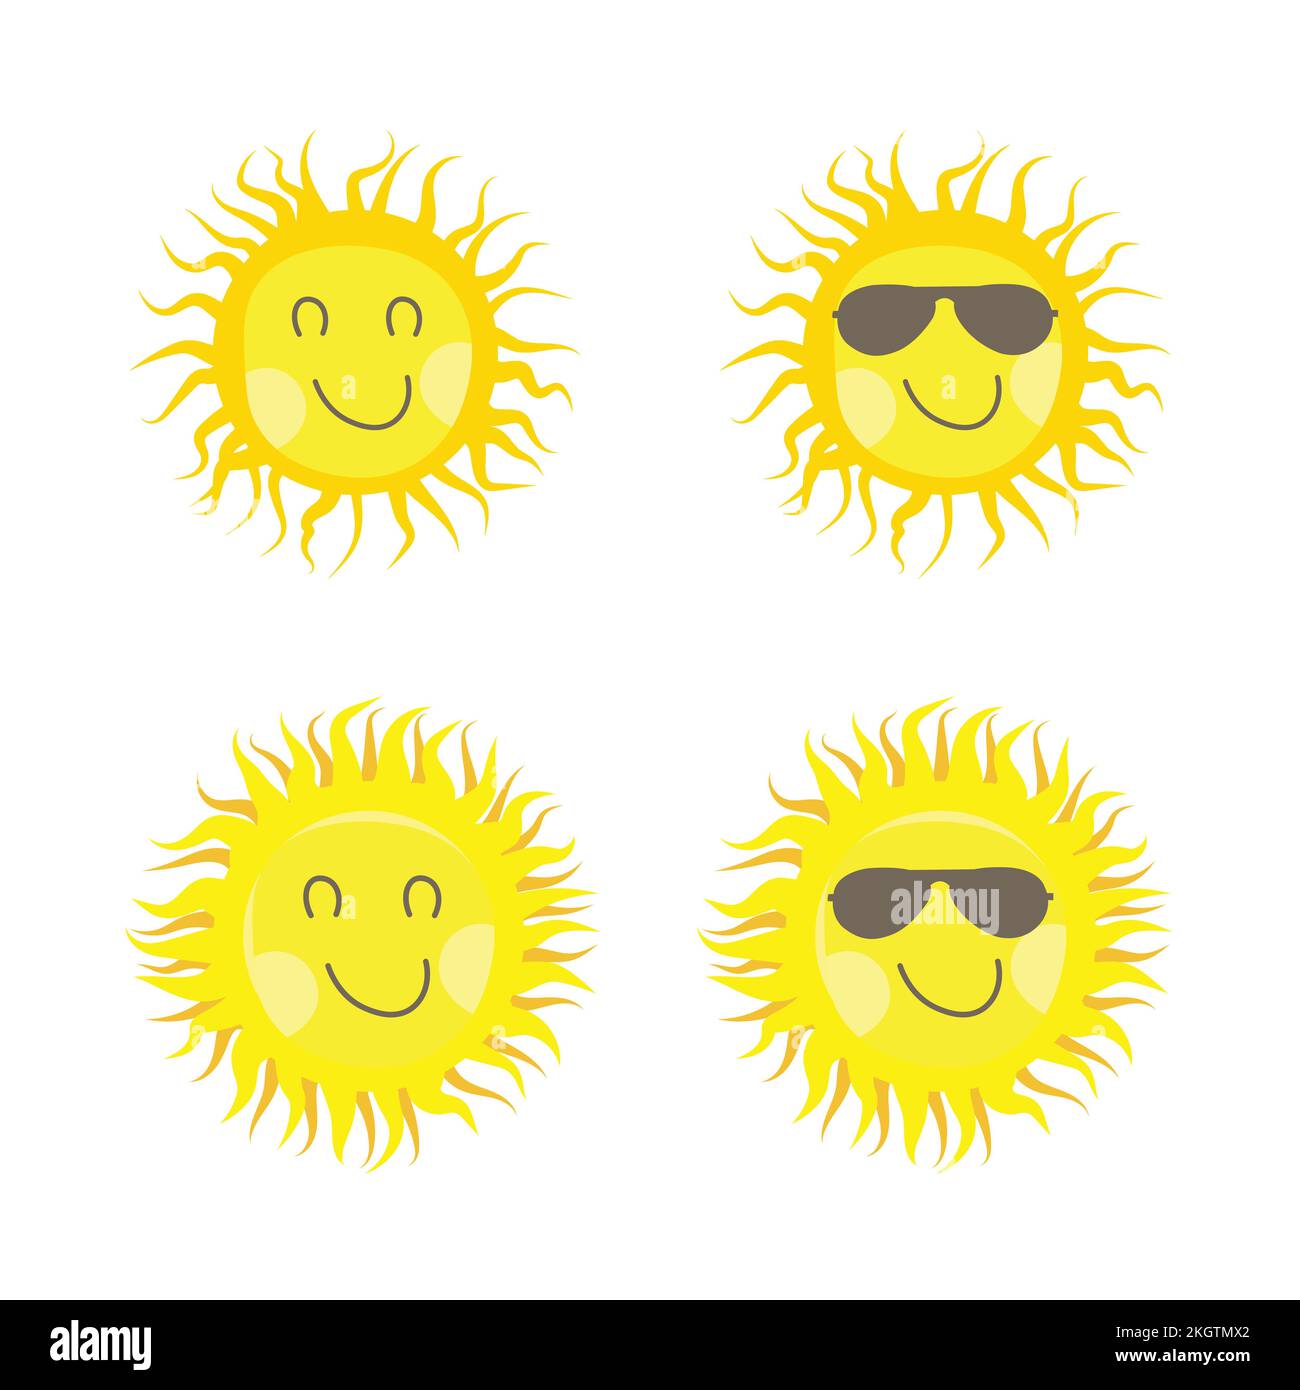 Dibujos Animados Color Carácter Sol Icono Luz Solar O Concepto De Viaje  Estilo De Diseño Plano. Ilustración Vectorial De La Estrella De La Mascota  Ilustraciones svg, vectoriales, clip art vectorizado libre de